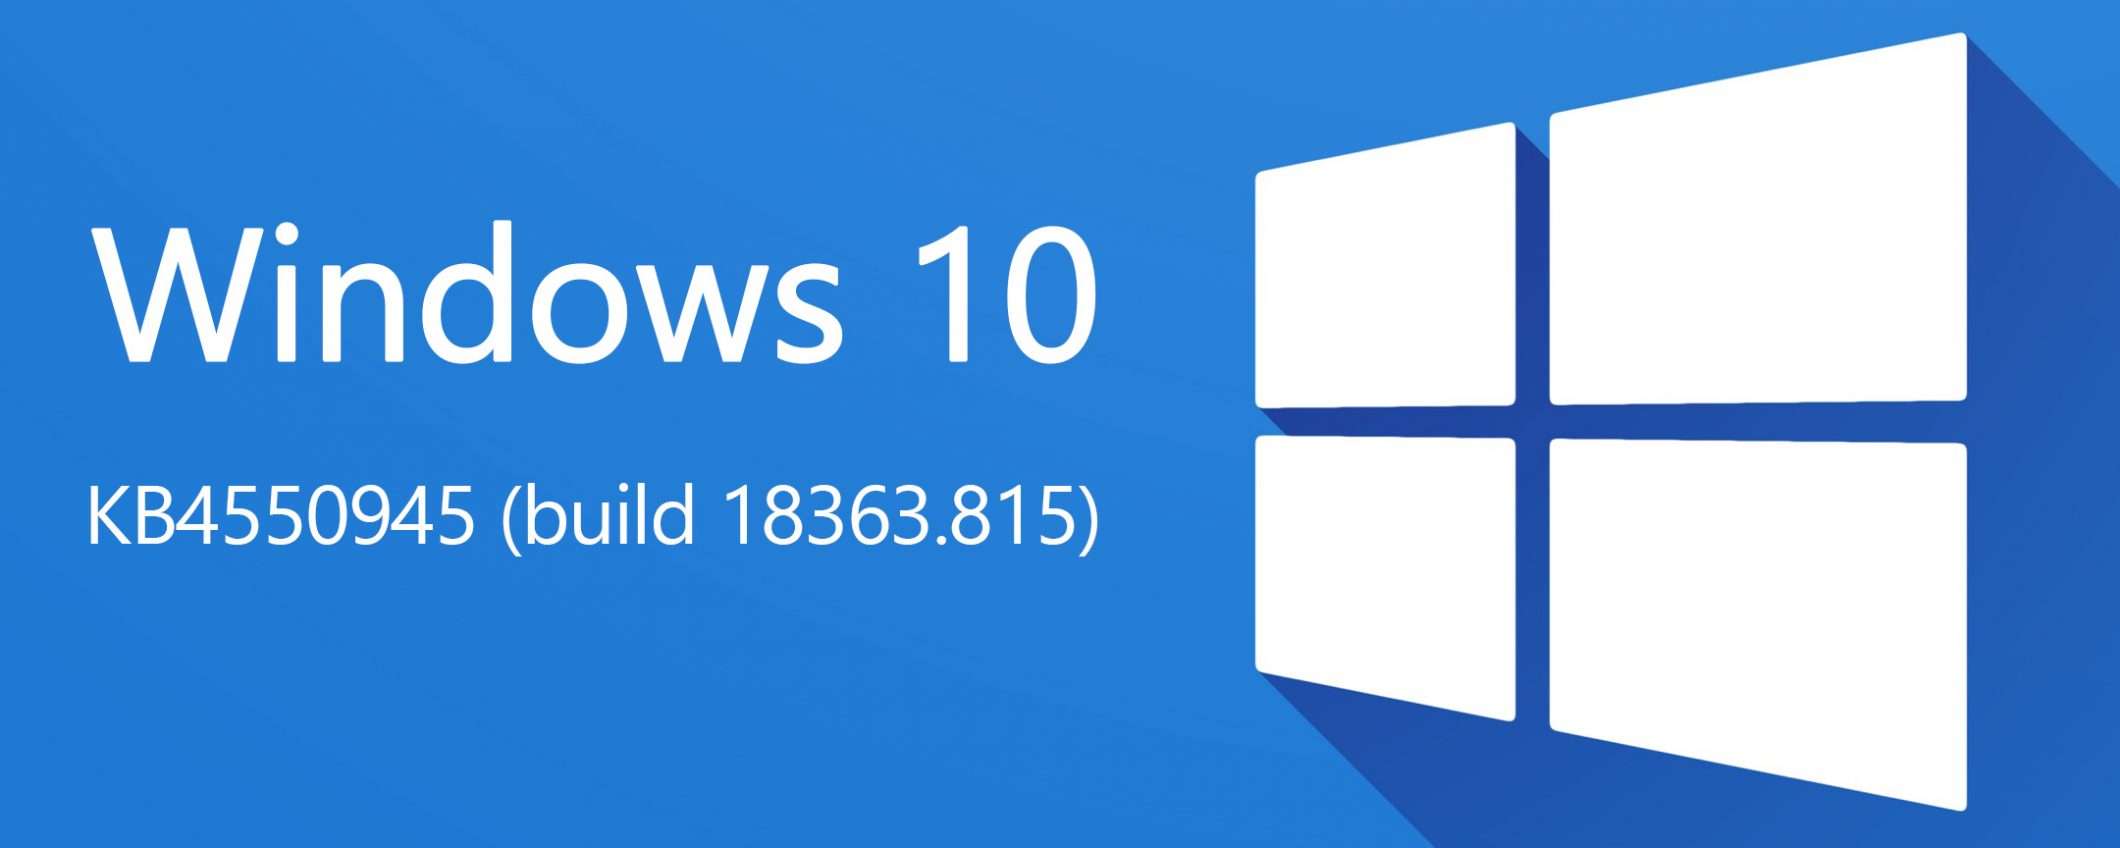 Windows 10: KB4550945 per correggere i problemi